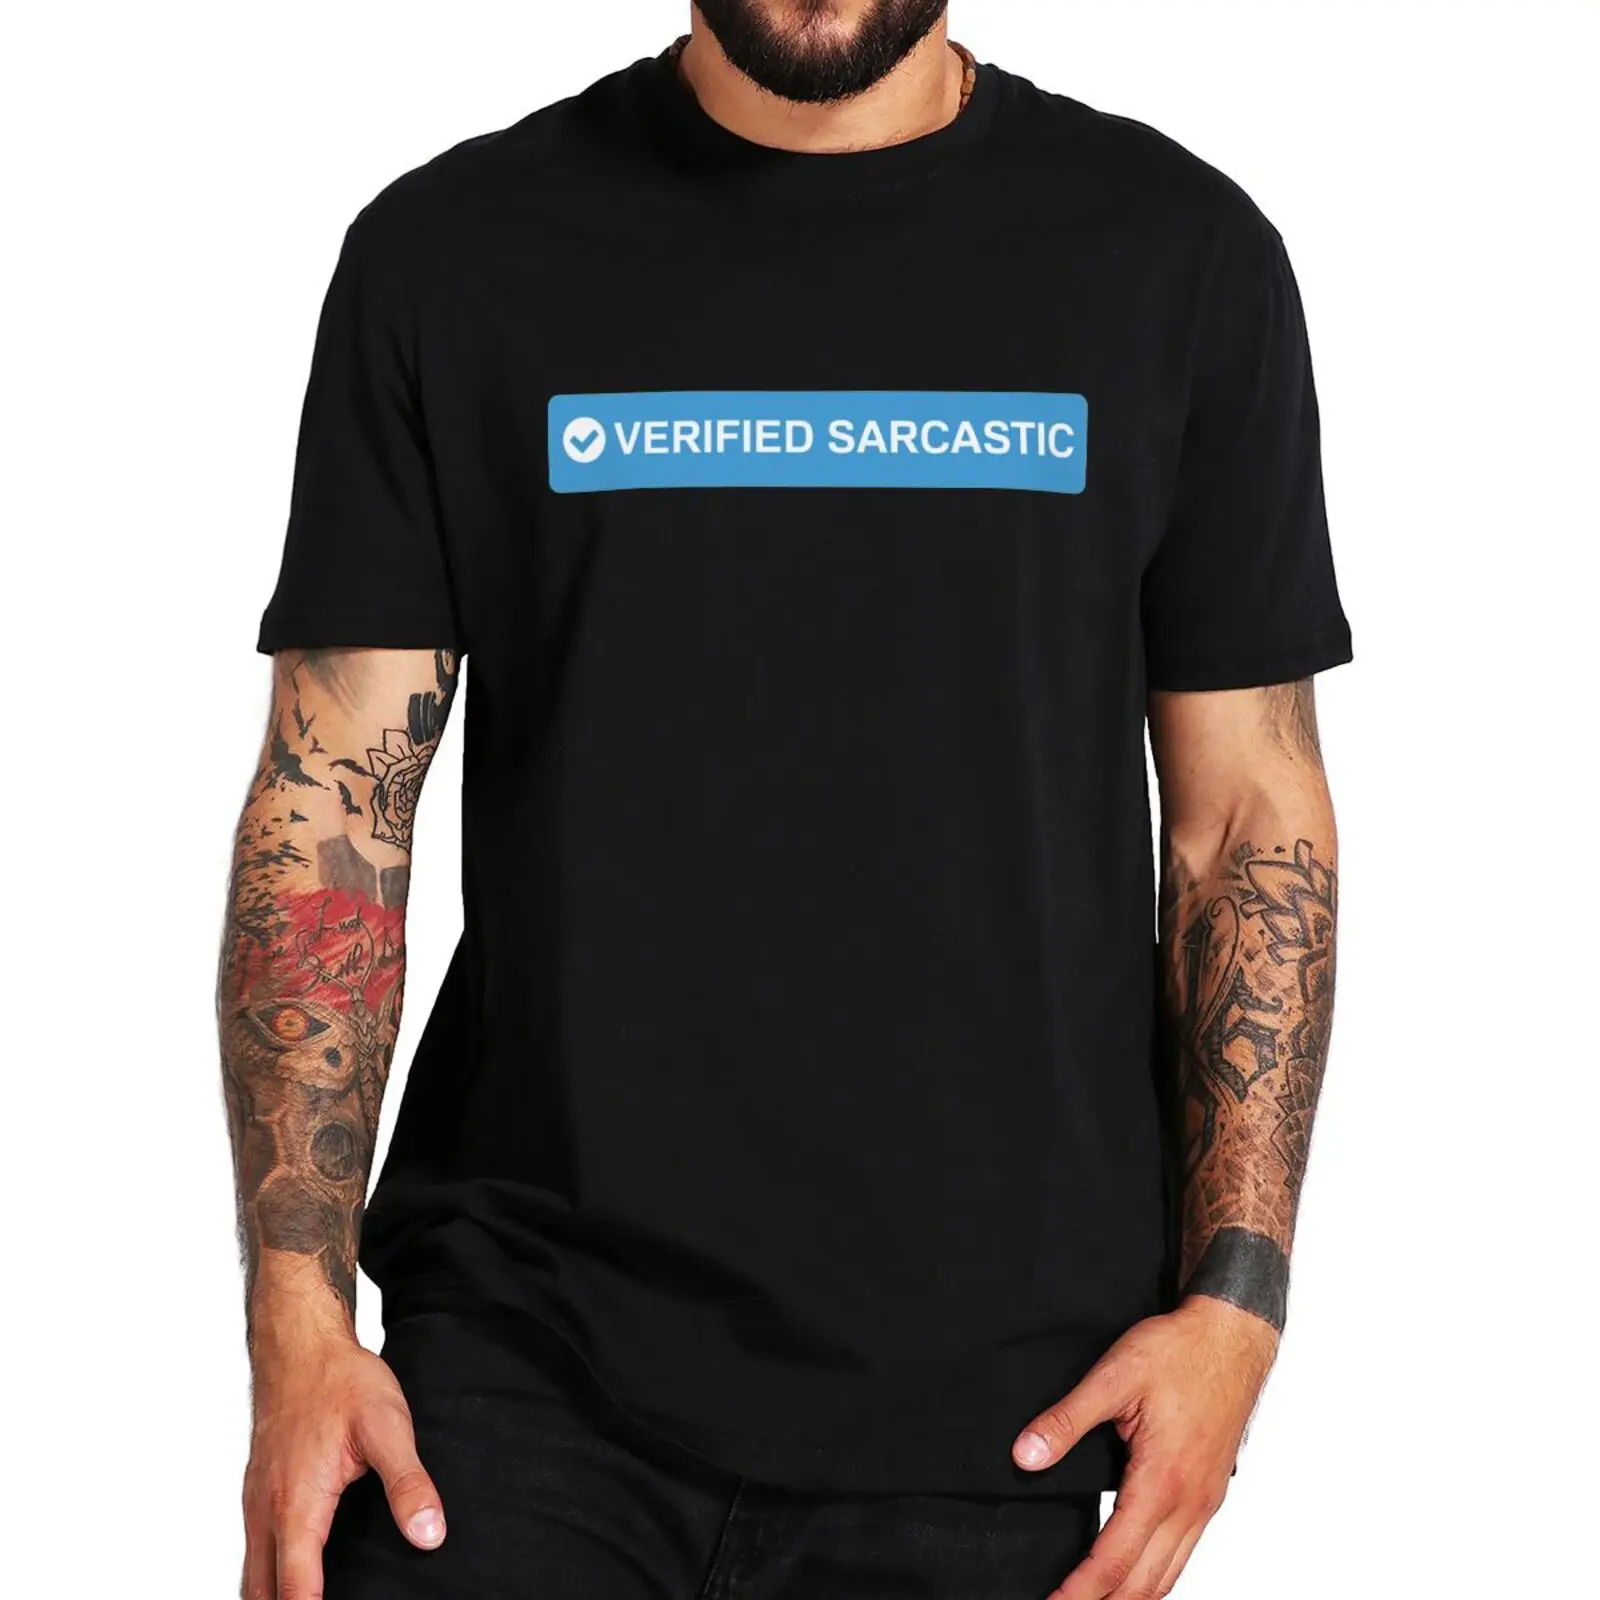 

Проверенная саркастическая футболка унисекс, забавная Женская и мужская футболка с смешным юмором и мемом, Повседневная Уличная футболка из 100% хлопка европейского размера